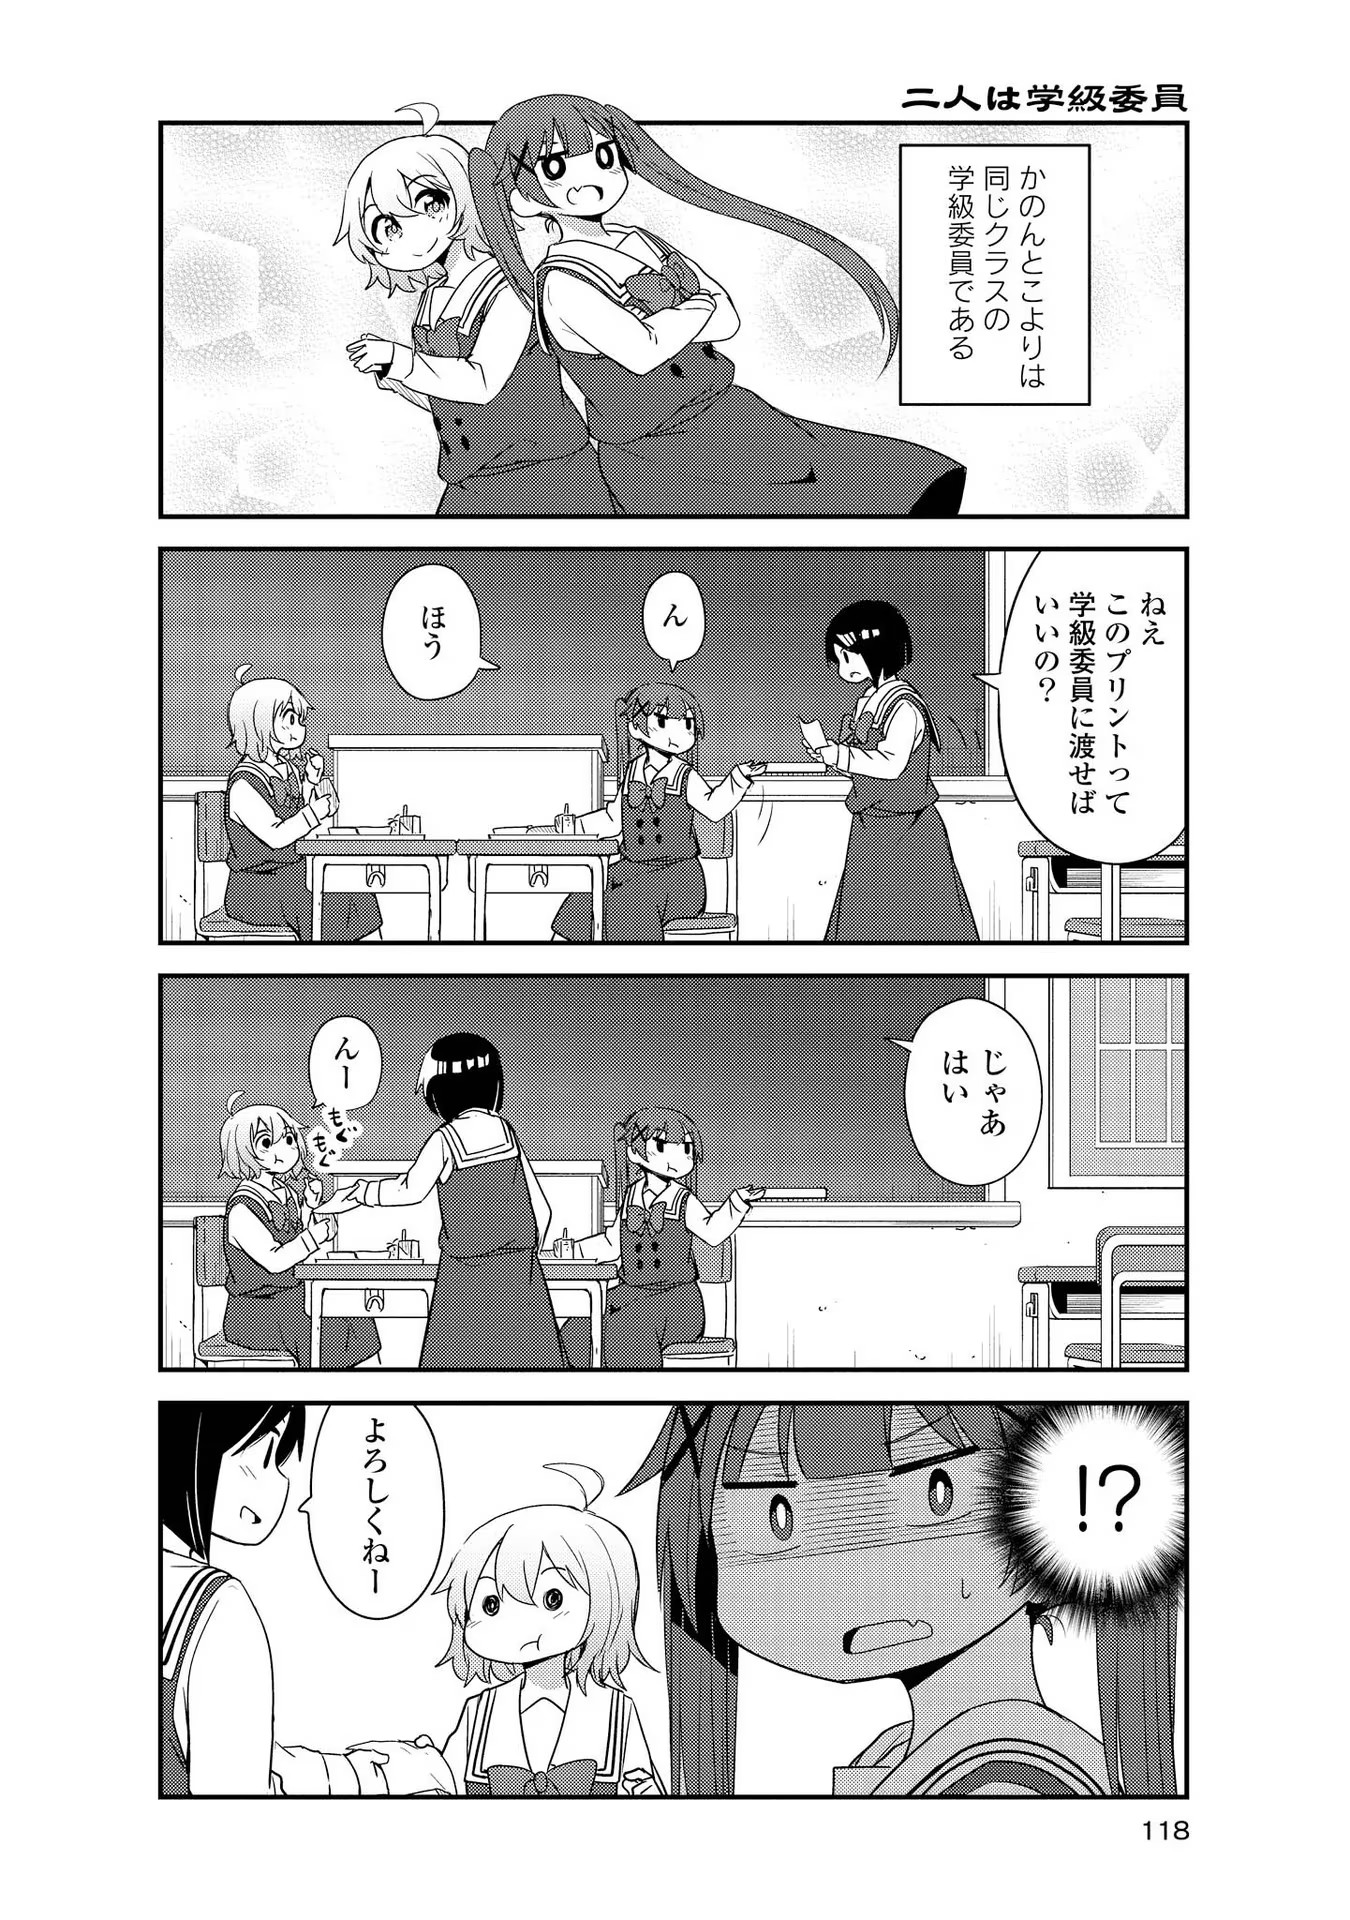 Watashi ni Tenshi ga Maiorita! - Chapter 28 - Page 2